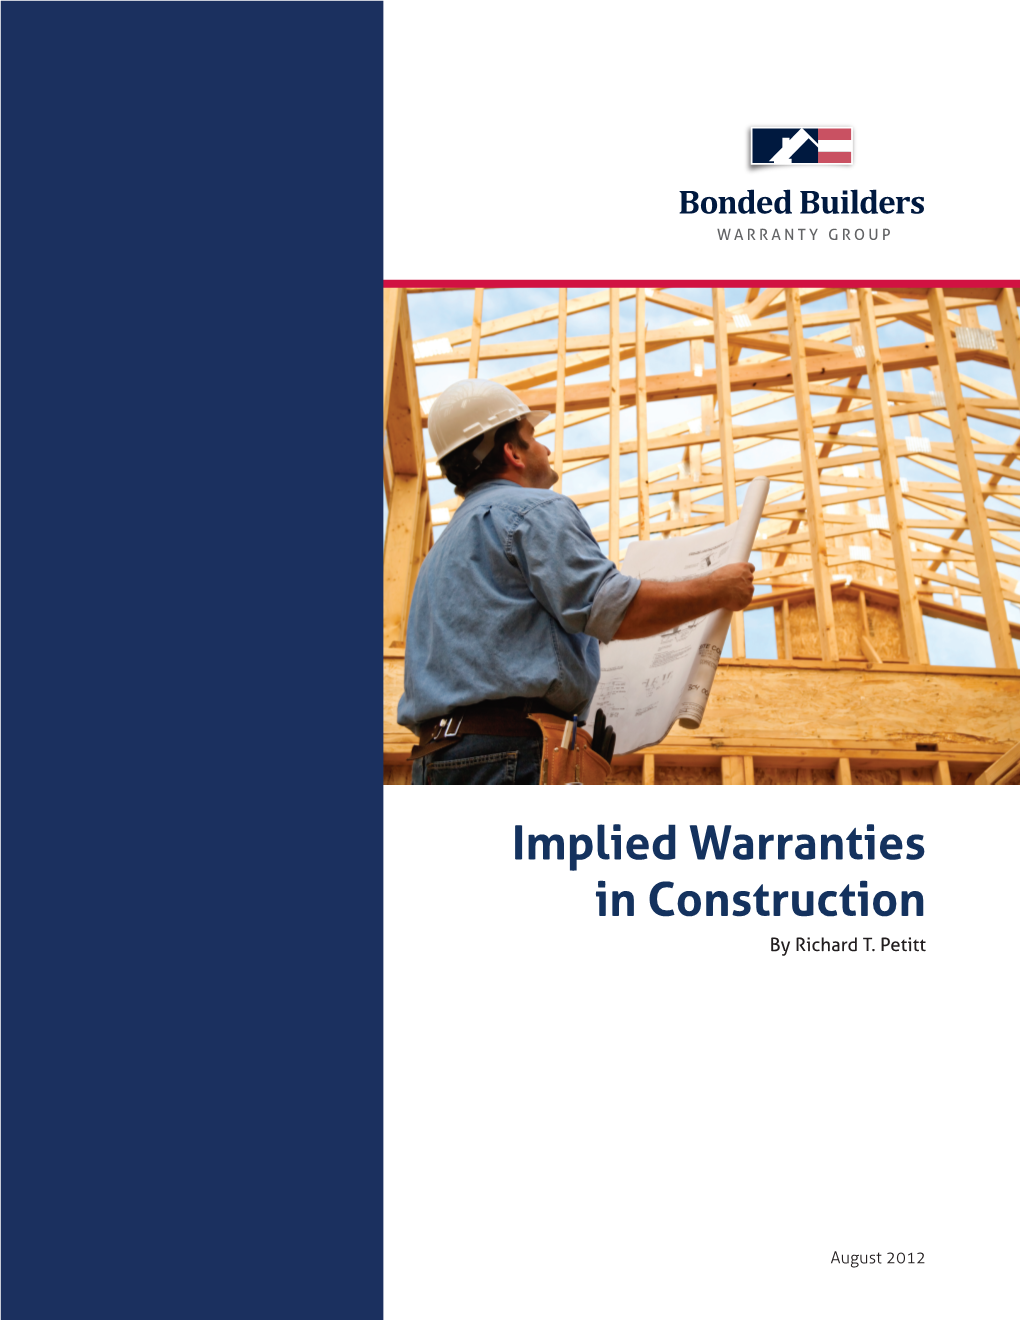 Implied Warranties in Construction by Richard T